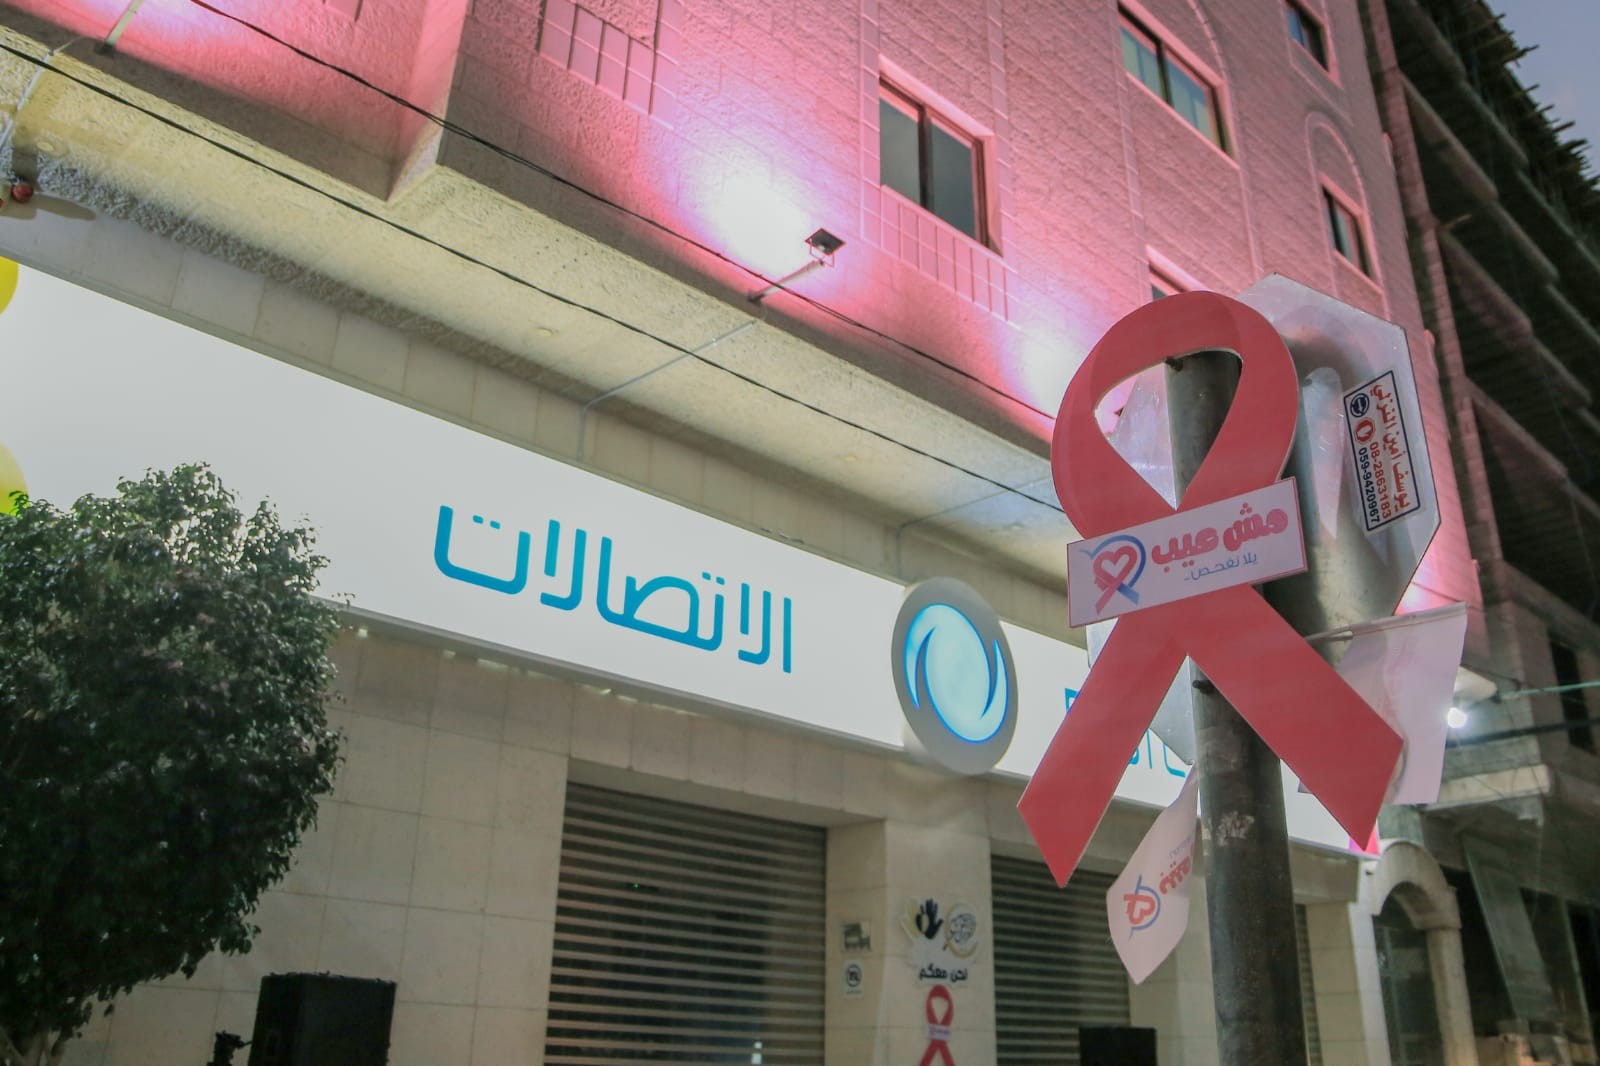 إضاءة مبني الاتصالات الفلسطينية باللون الوردي ضمن حملة "مش عيب يلا نفحص"